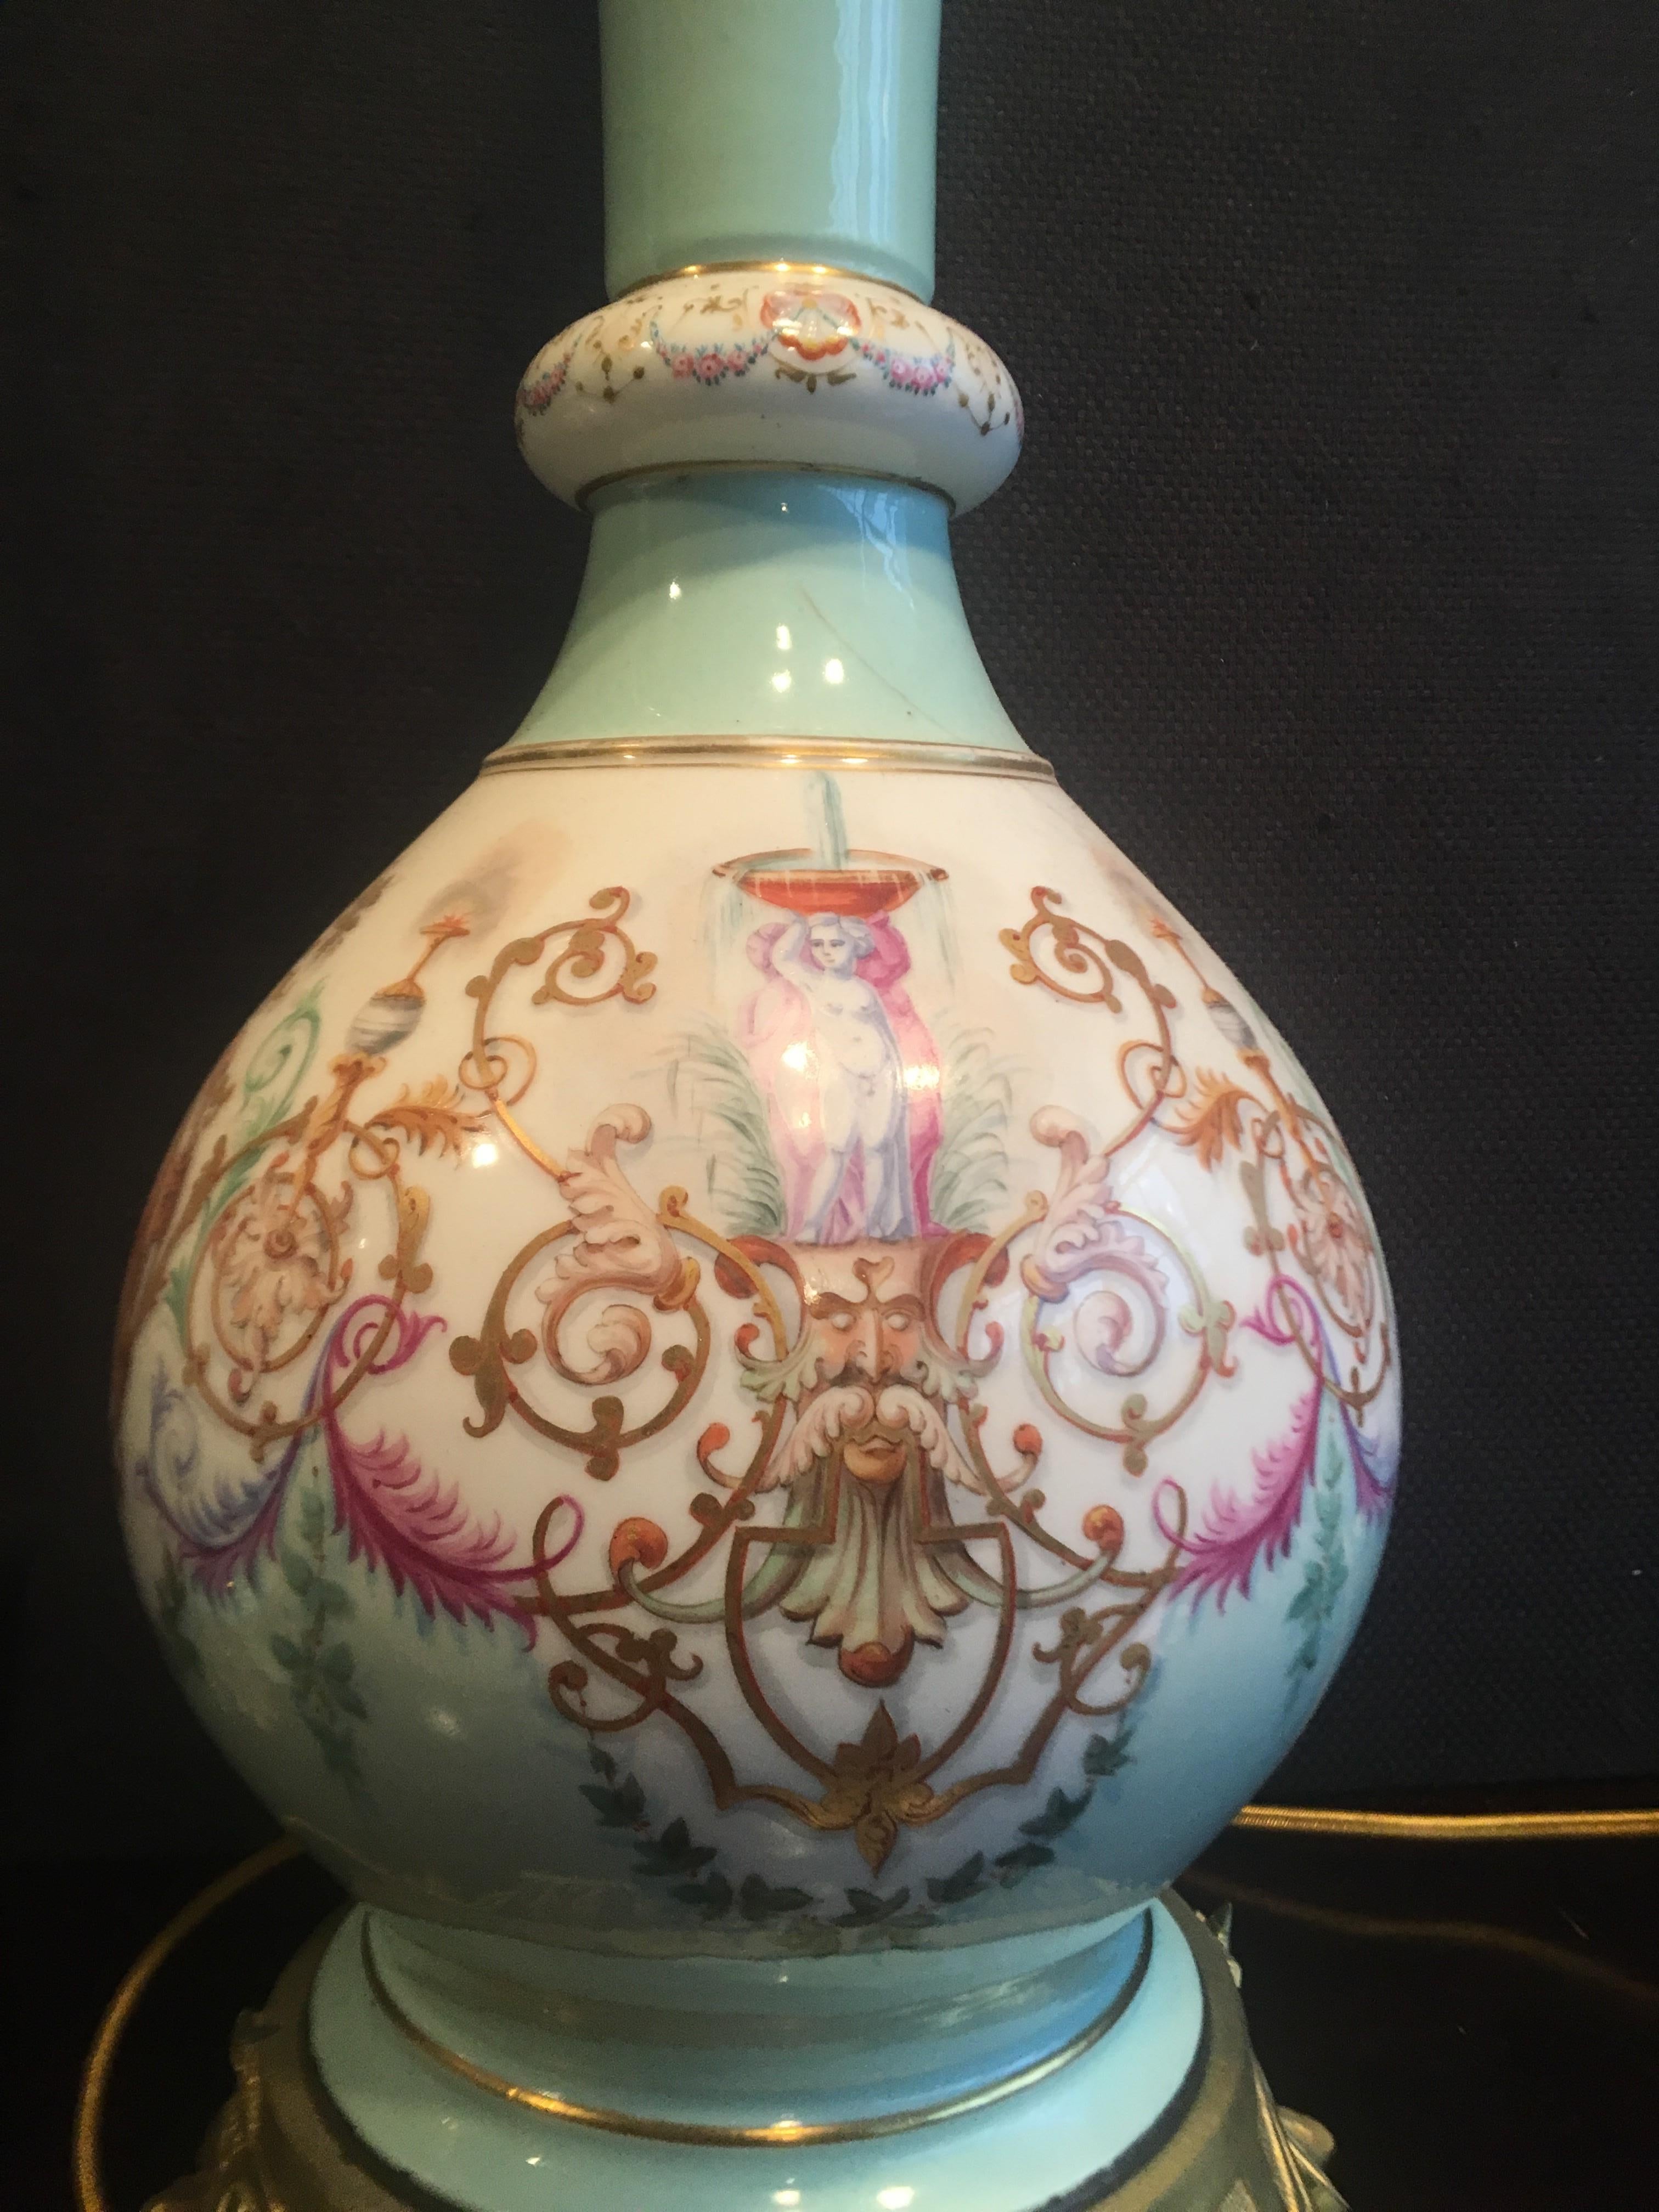 Paire de vases en porcelaine néoclassique du XIXe siècle avec montures en bronze doré transformés en lampes, décorés de motifs classiques peints à la main à la manière de la porcelaine de Sèvres. France, vers 1880.